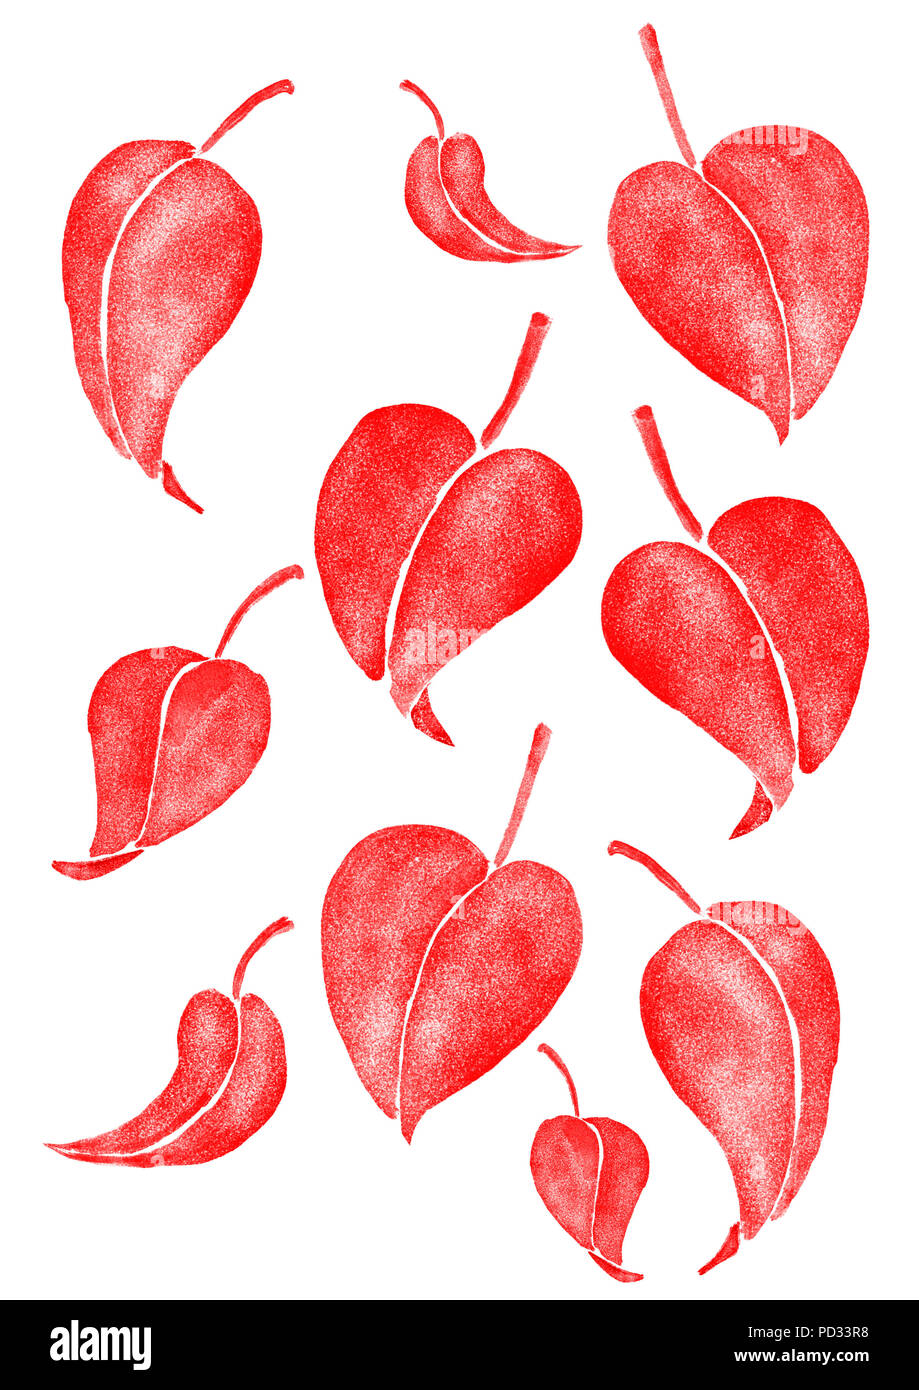 Une illustration à l'aquarelle numérique. Un ensemble de 10 feuilles rouge isolé sur chaque couche transparente et sur le fond blanc Banque D'Images